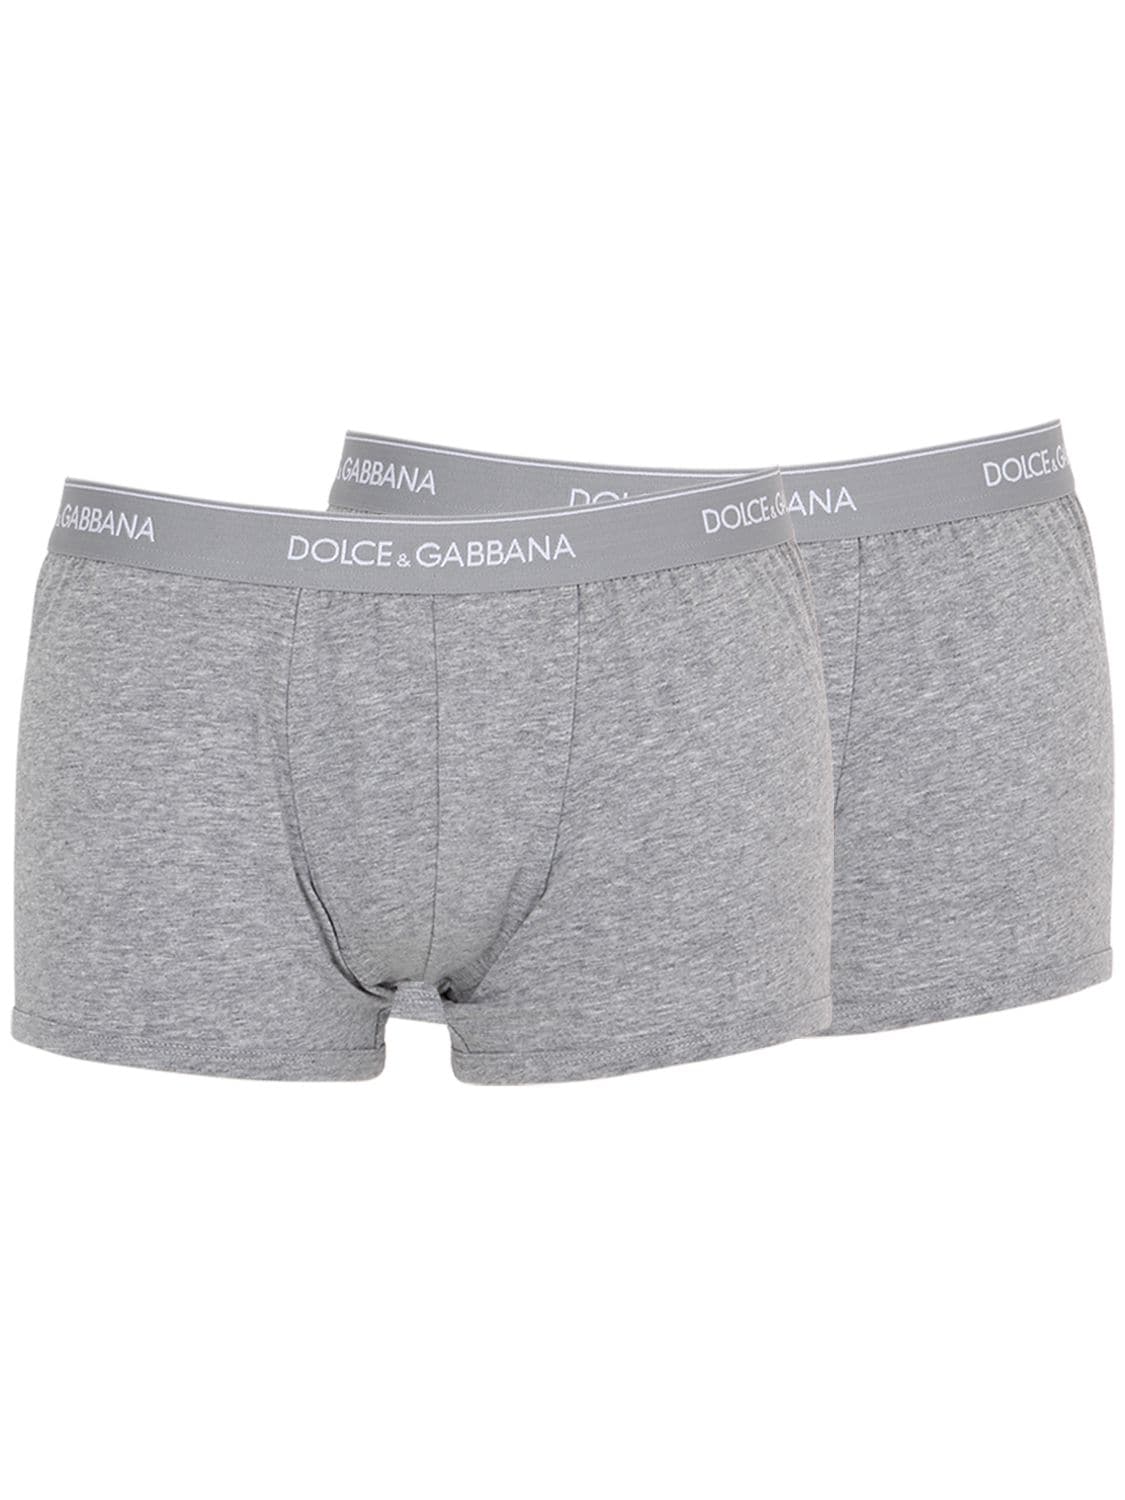 Dolce & Gabbana Pack Of 2 Logo Cotton Boxer Briefs In Dark Grey